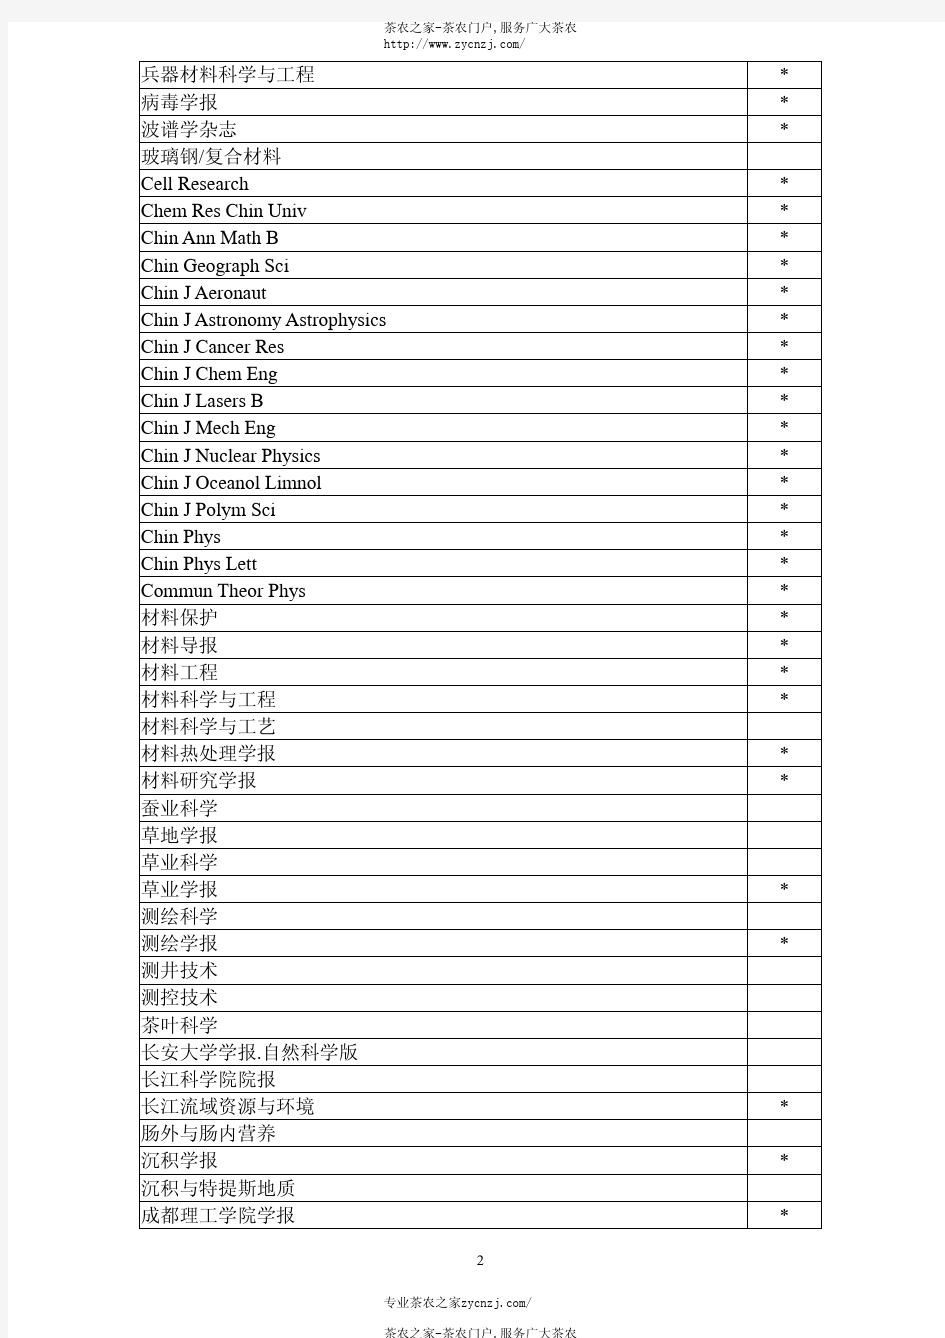 中国科学引文索引数据库(CSCD)收录期刊(2005 年)